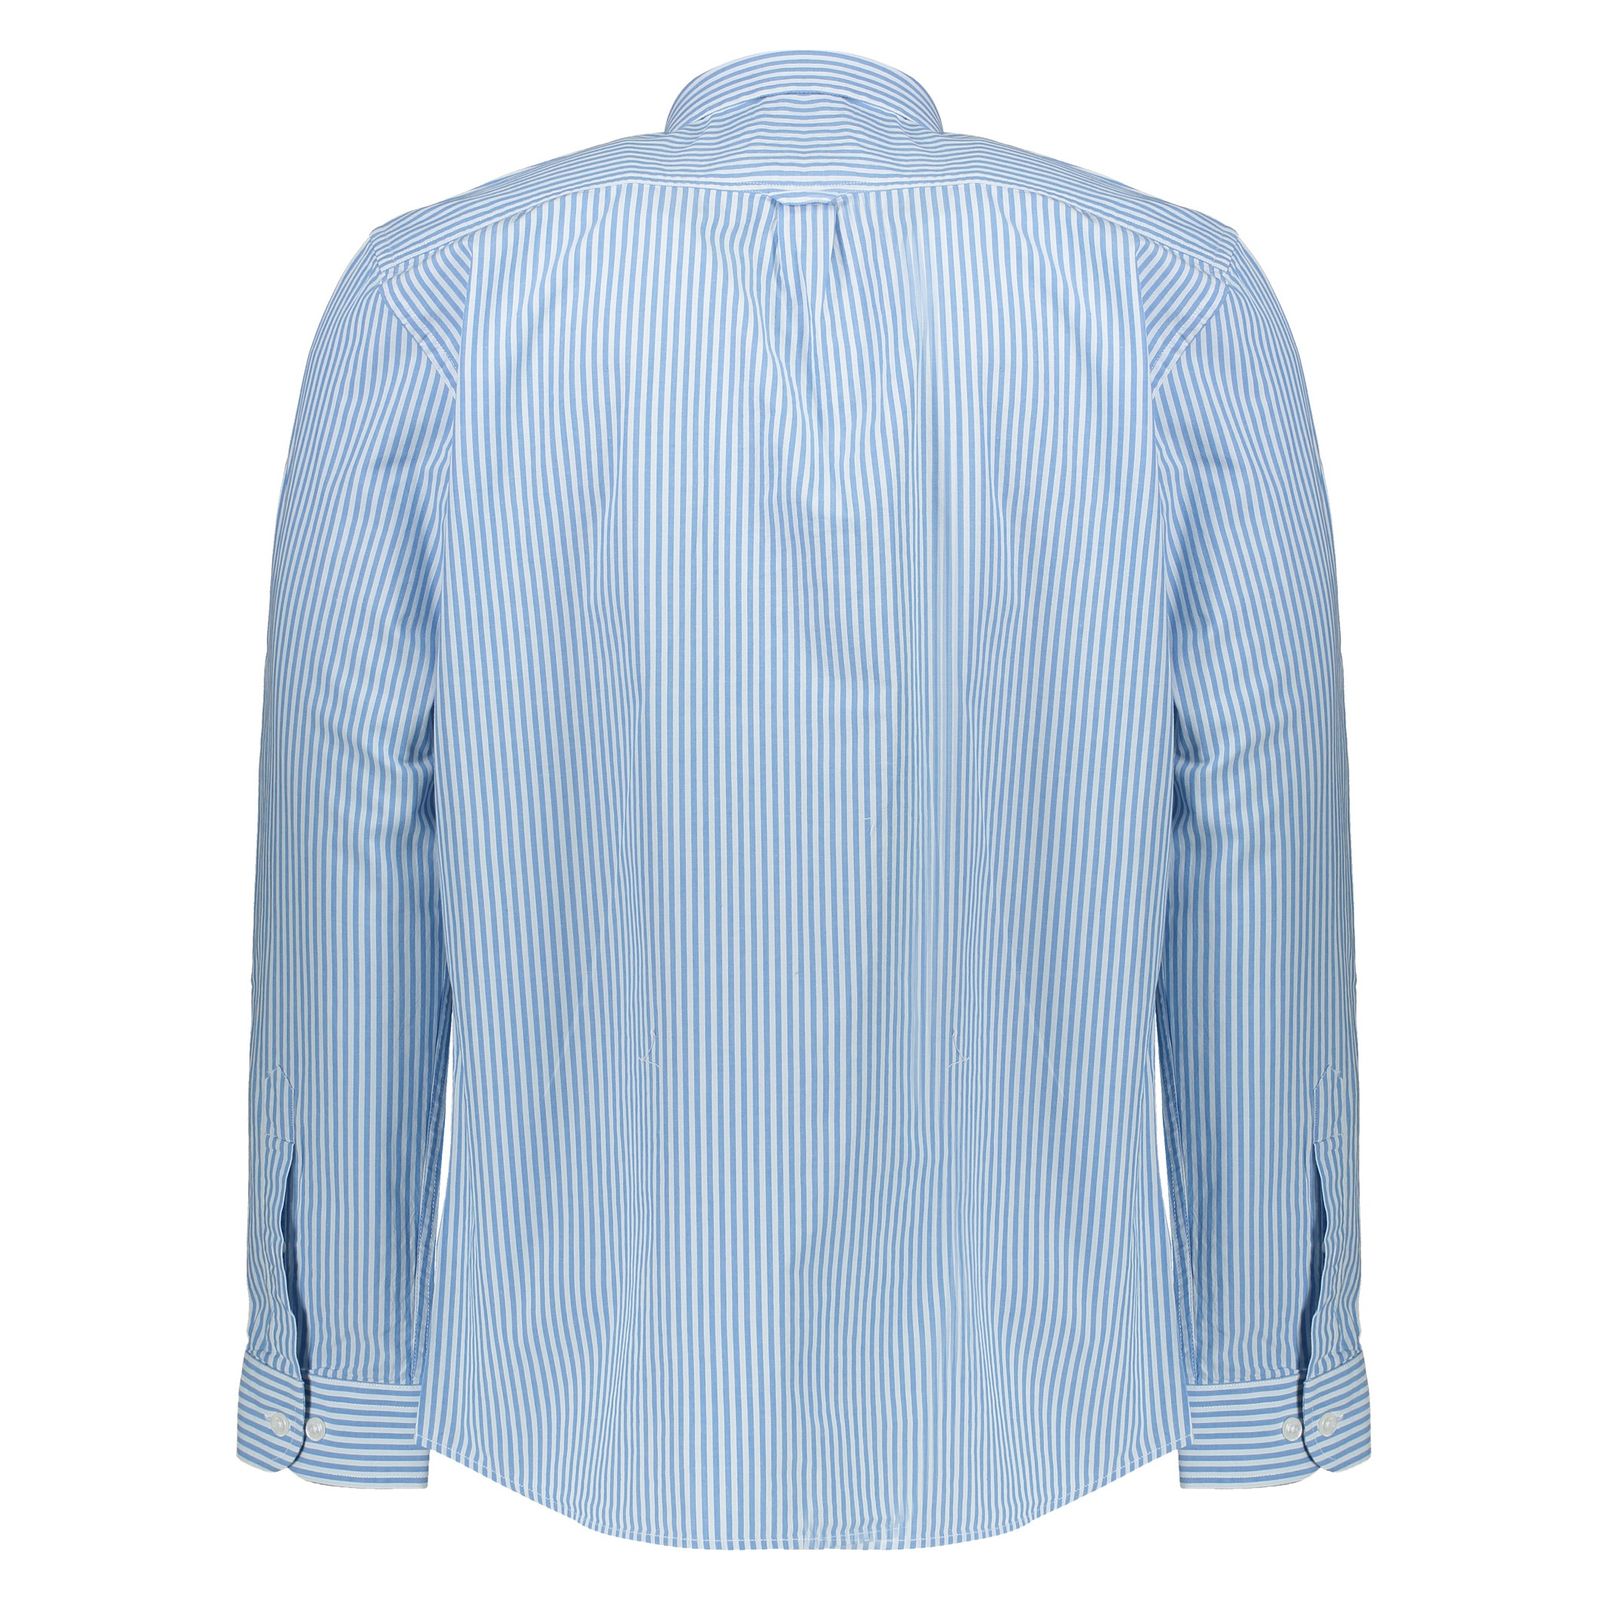 پیراهن مردانه لرد آرچر مدل 20011425101 - آبی سفید - 6